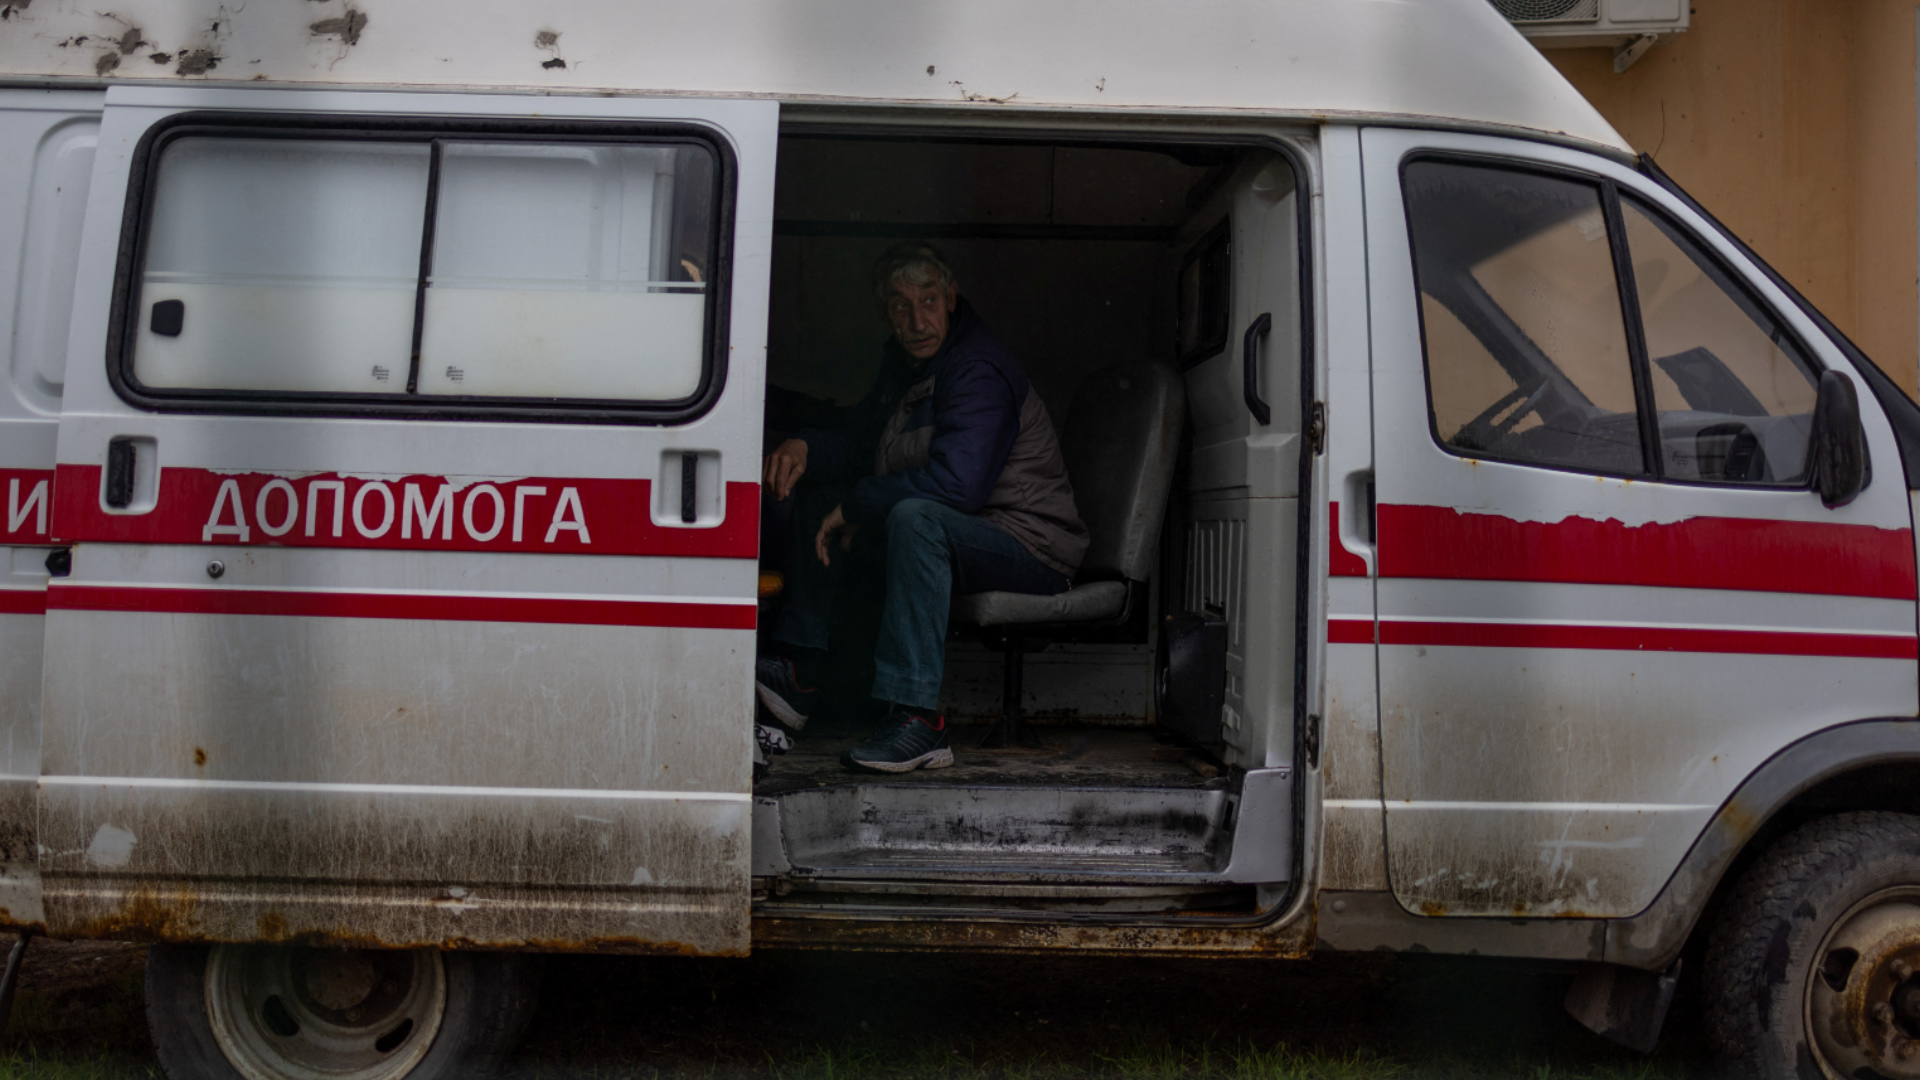 Người dân Ukraine gặp khó khăn khi khám chữa bệnh - Ảnh 1.